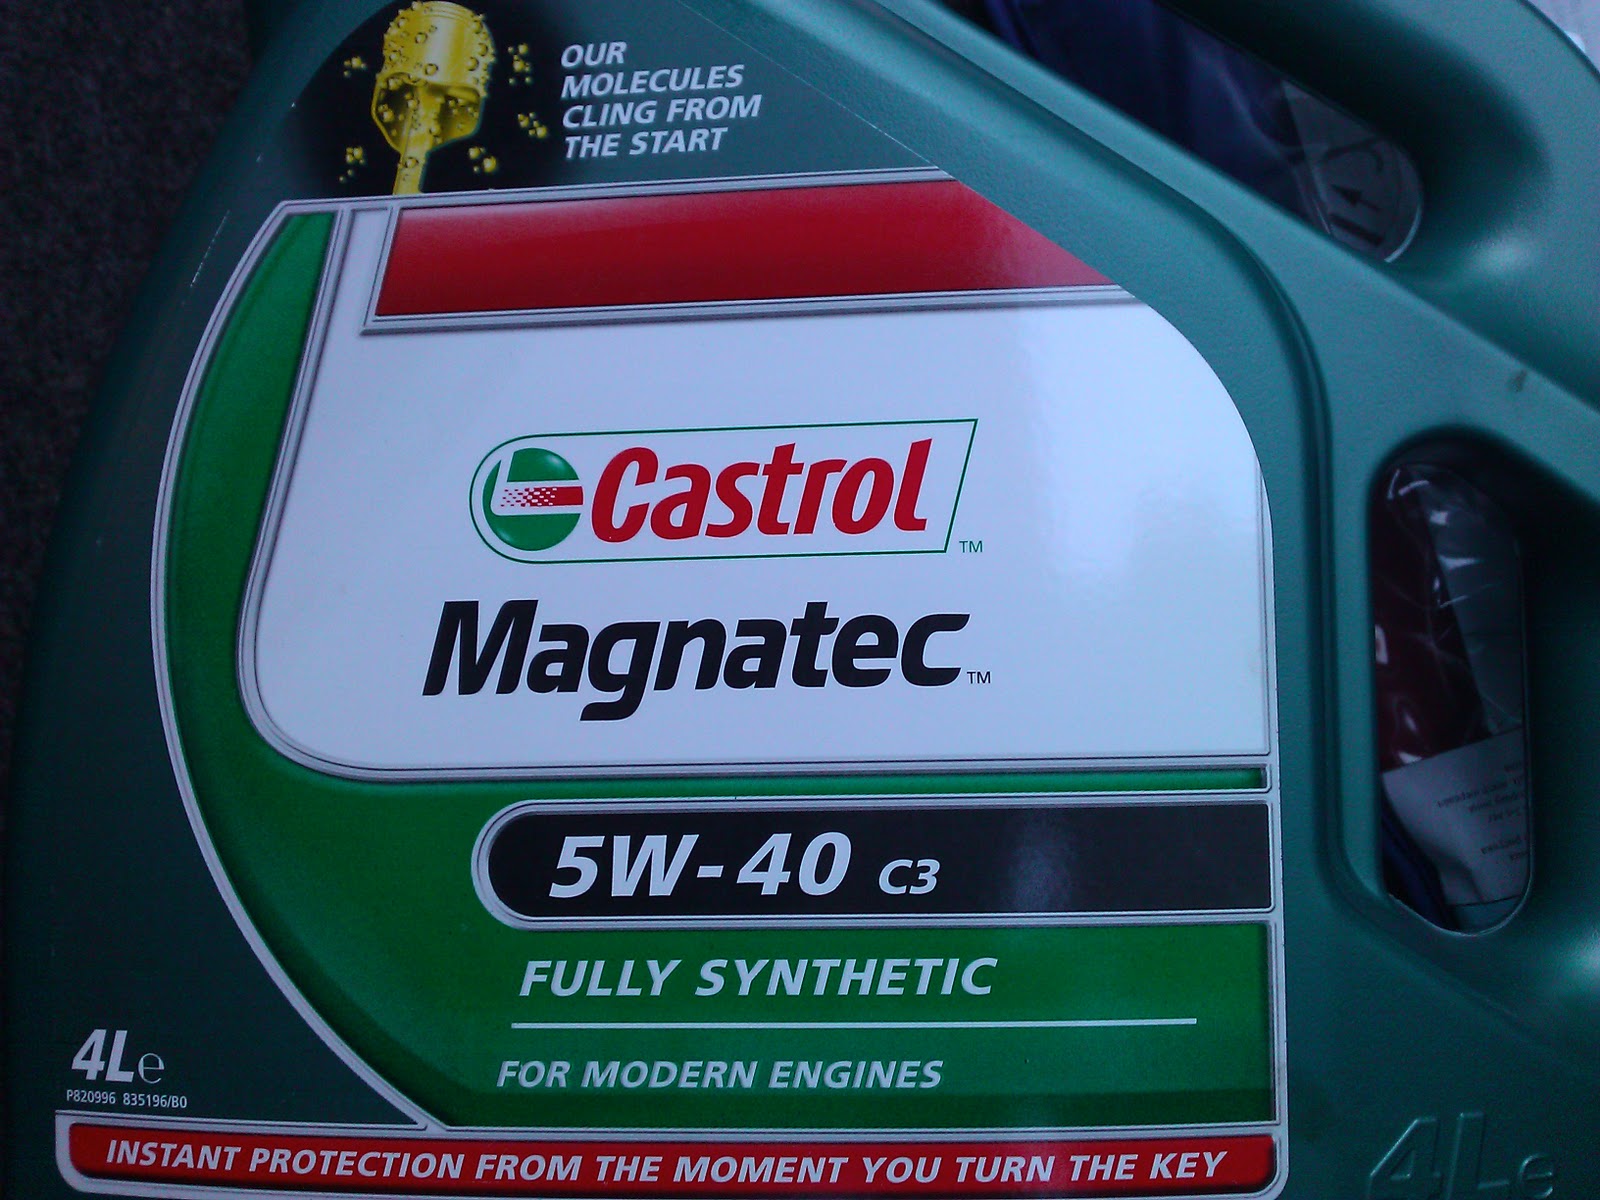 Какое масло лучше заливать в альфу. Castrol Magnatec 5w40. Тойота Ярис версо 2001 1.5 масло. Масло для Витц 1.3. Castrol Magnatec реклама.